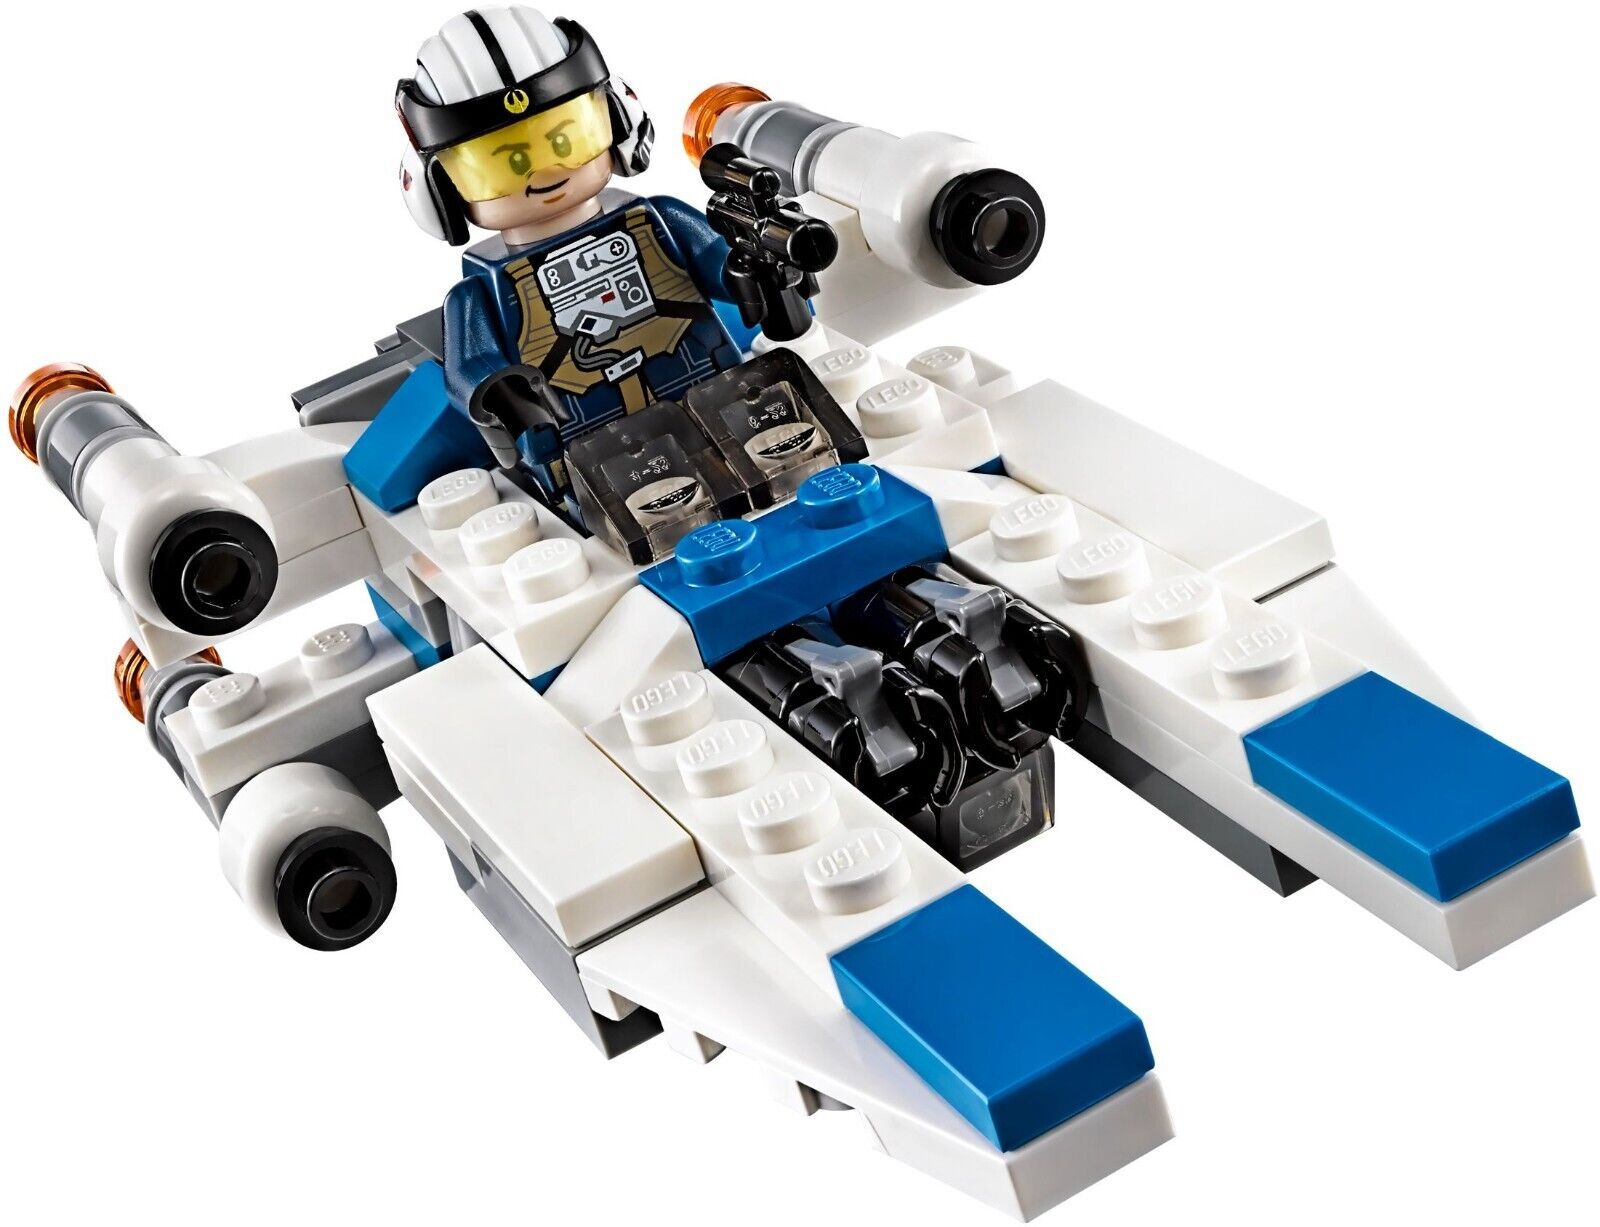 LEGO NIB 75160 Star Wars U-Wing Microfighter Retired